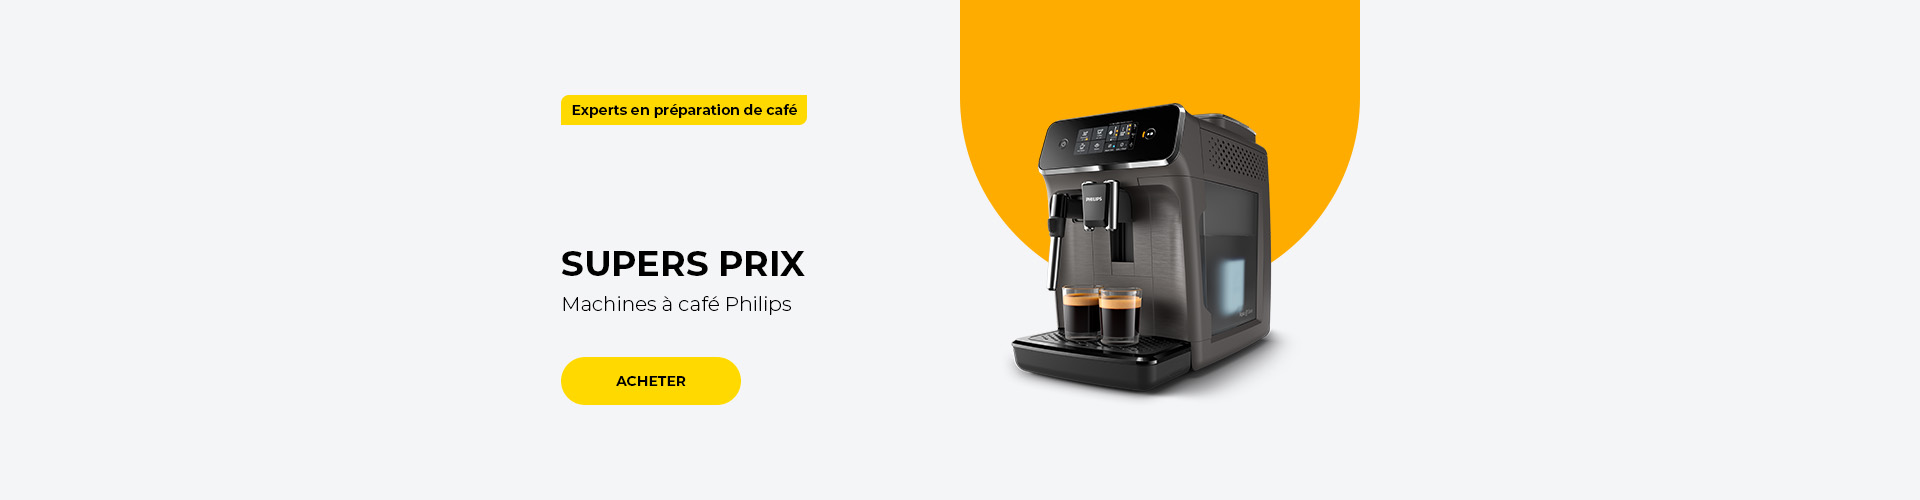 SUPERS PRIX Machines à café Philips